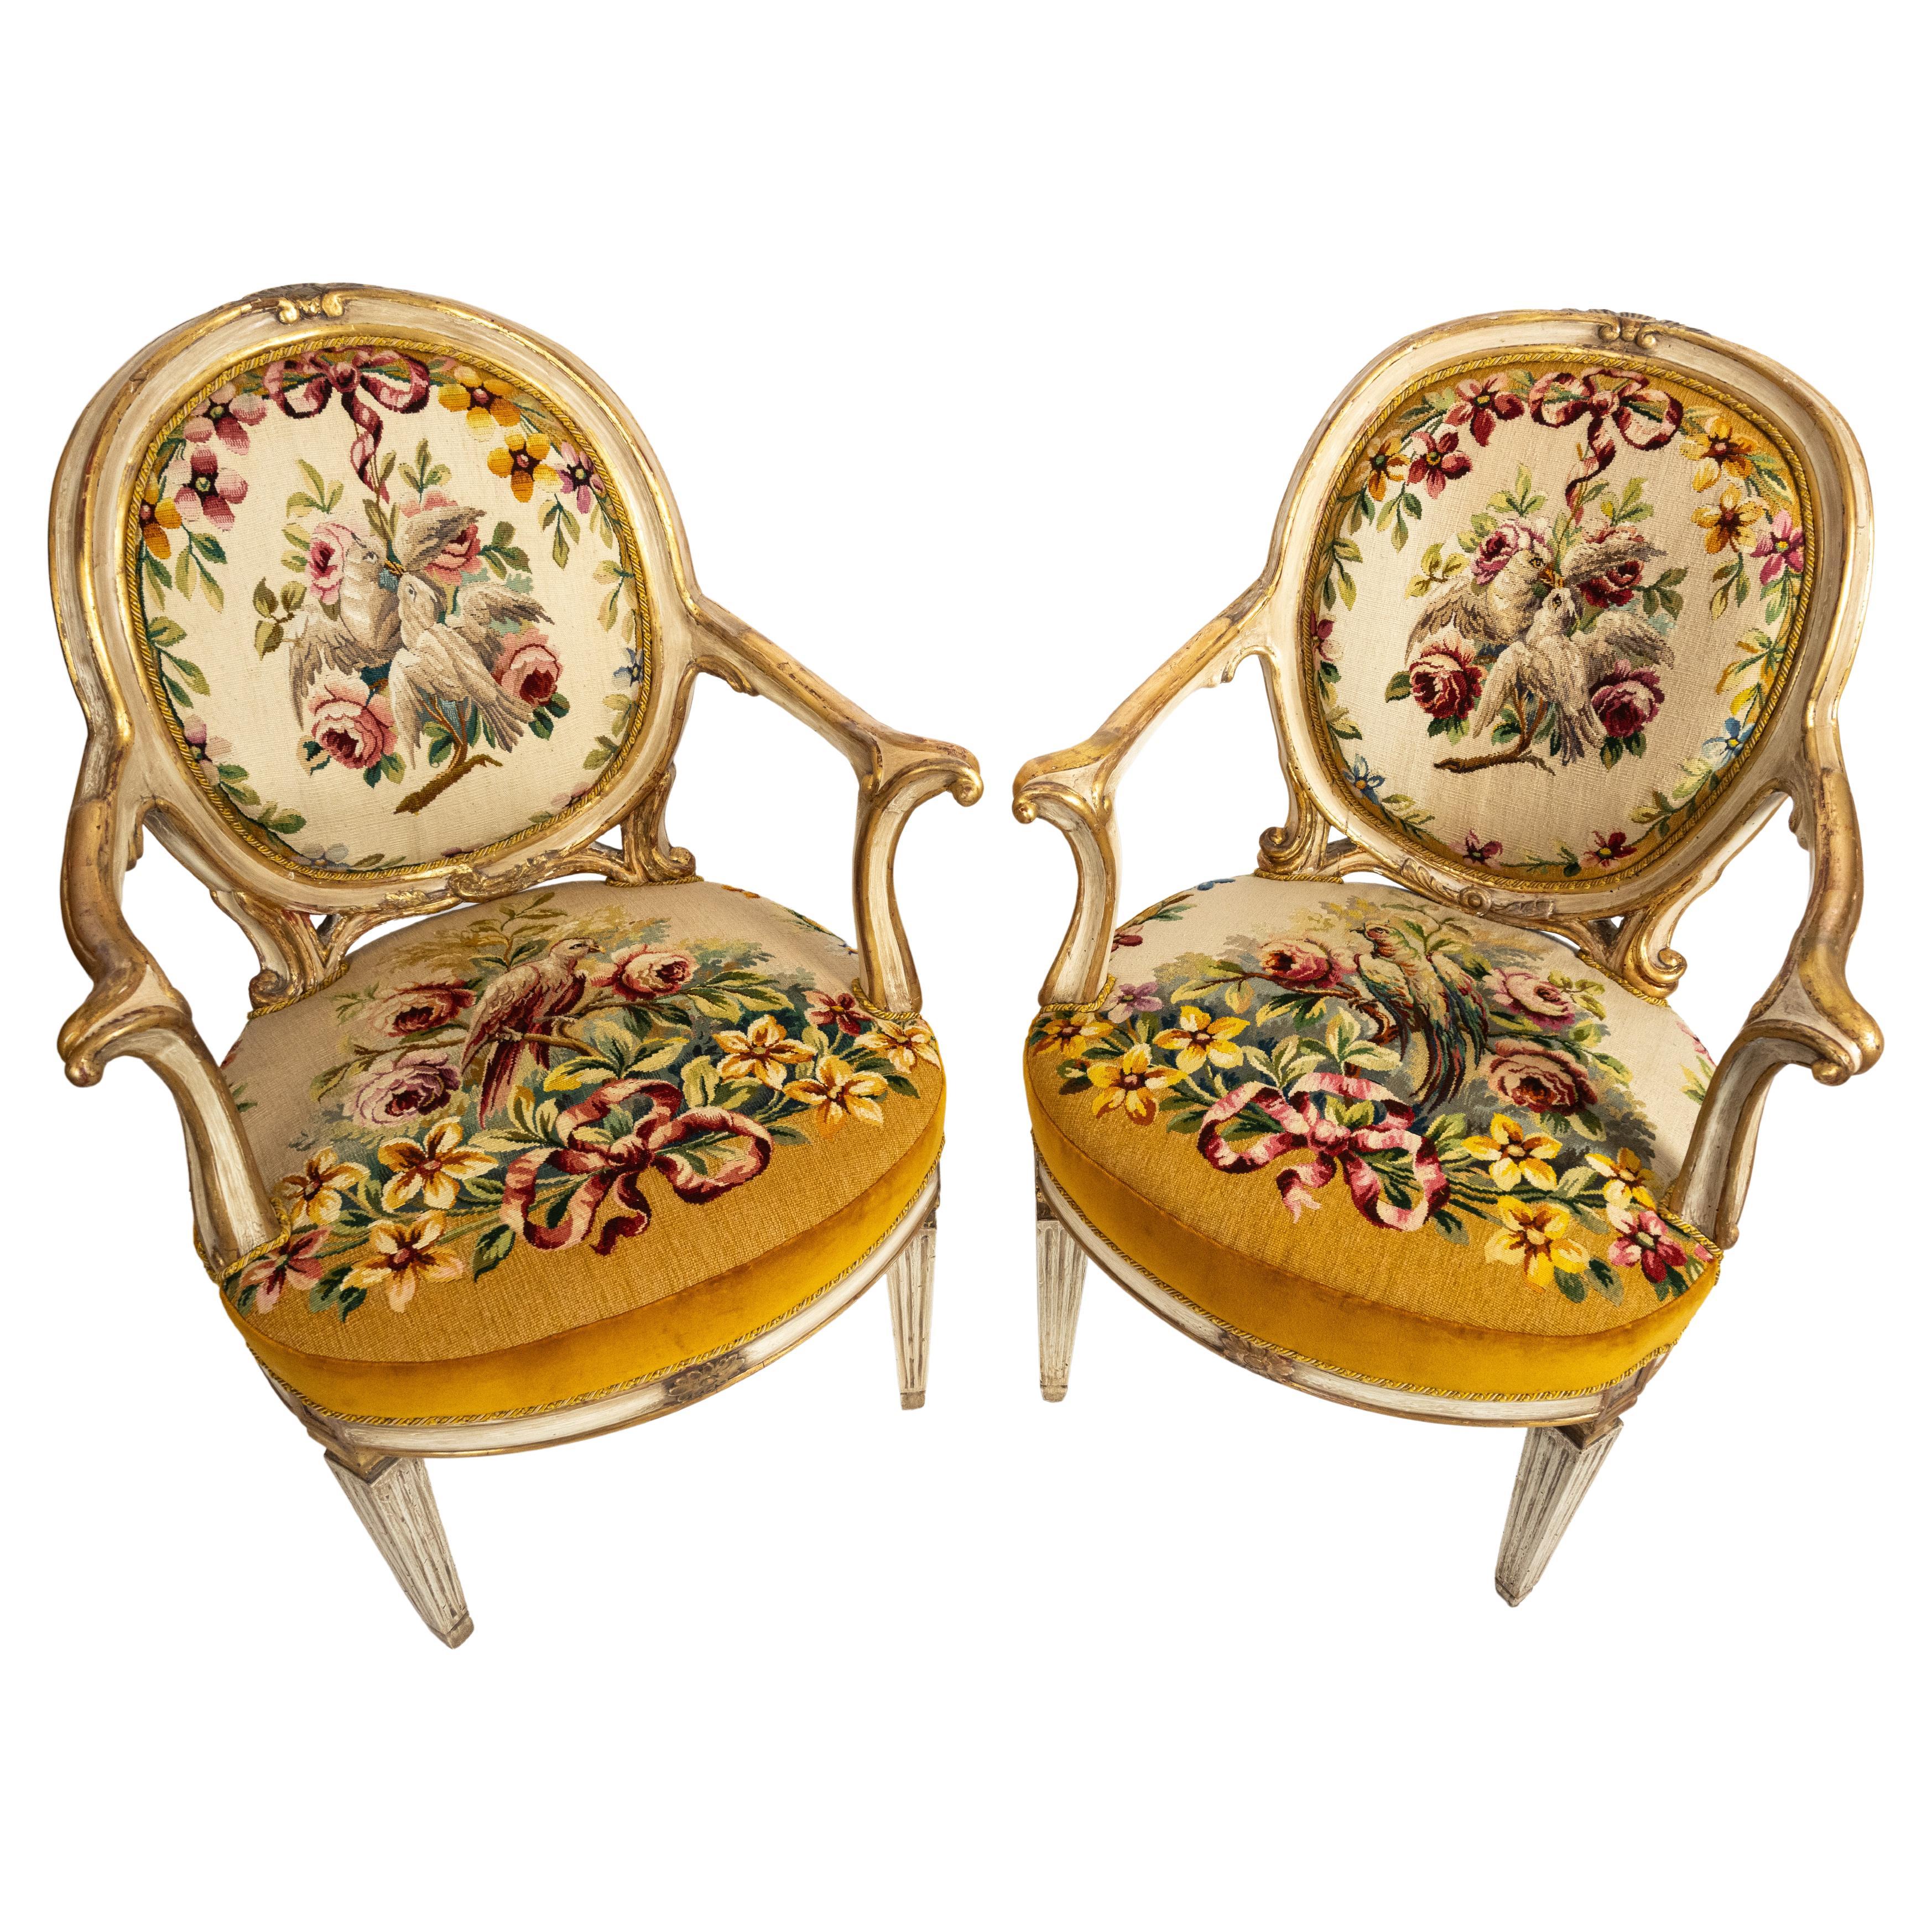 Ein Paar italienischer neoklassischer offener Armlehnstühle mit geschnitzten, weiß lackierten Rahmen und vergoldeten Details. Die ovalen Rückenlehnen und Sitze sind mit französischer Aubusson-Tapisserie gepolstert, die mehrfarbige Blumen- und